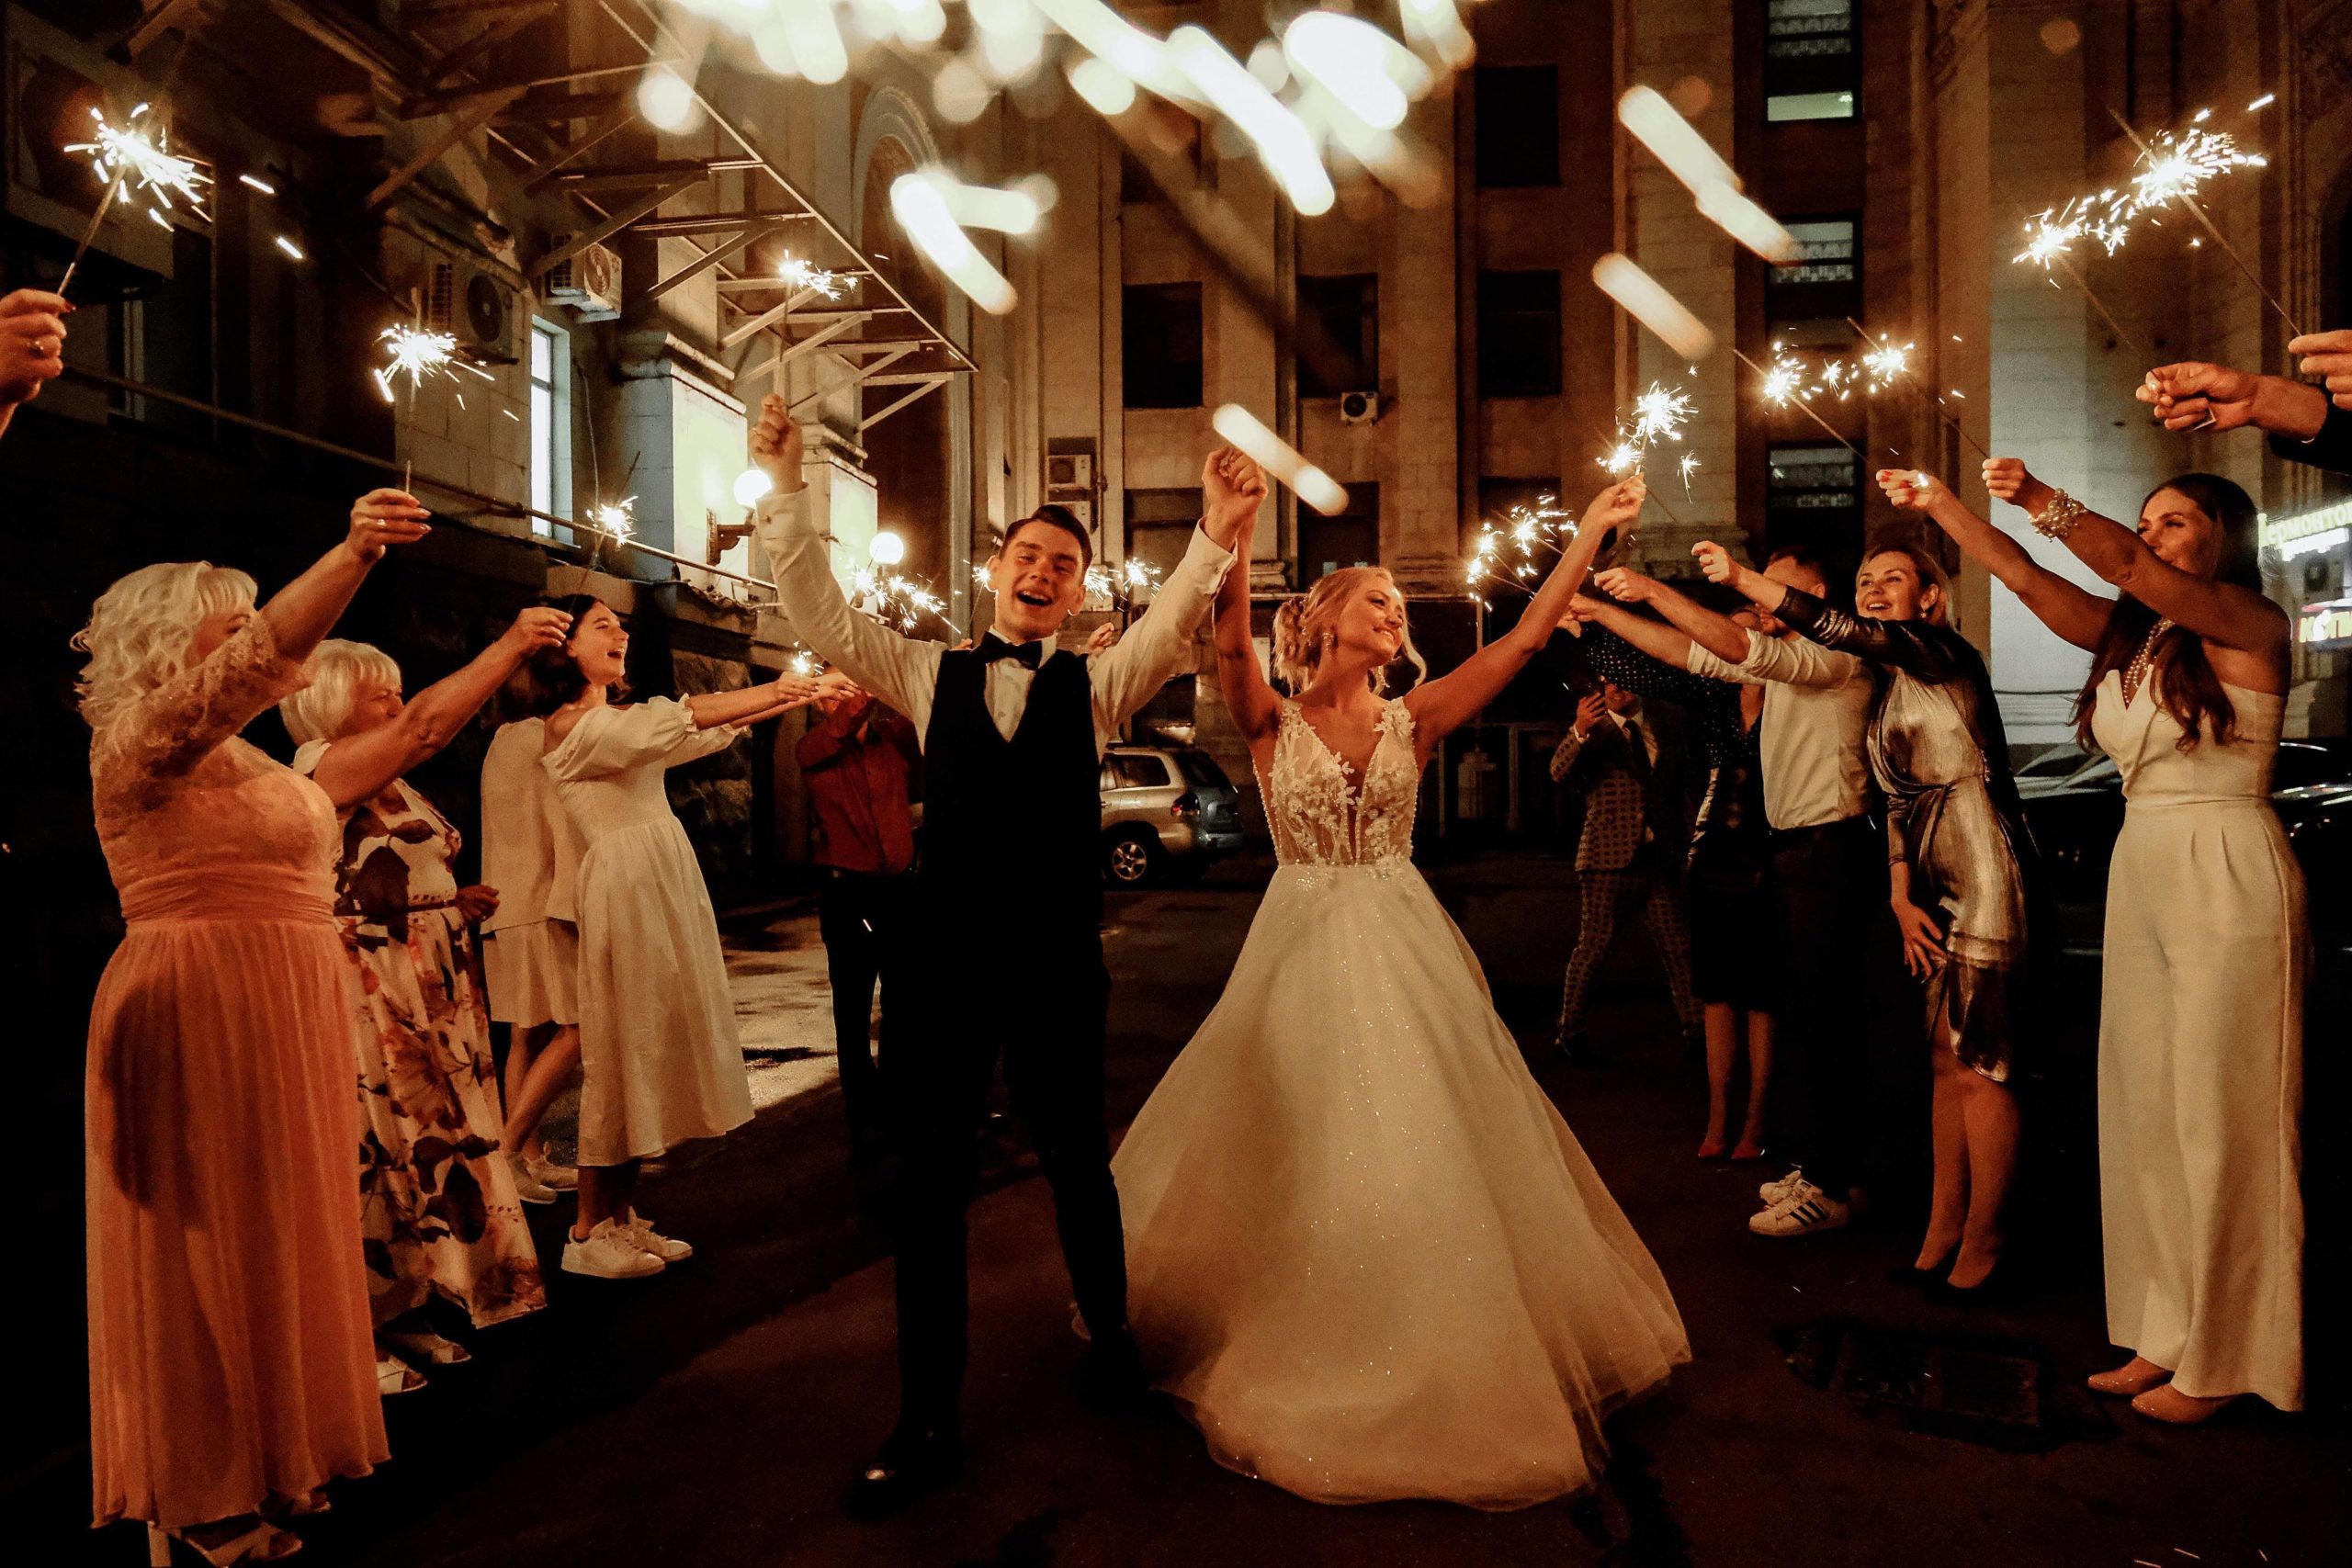 invitados de una boda con palitos luminosos en una boda nocturna alrededor de los novios que están bailando